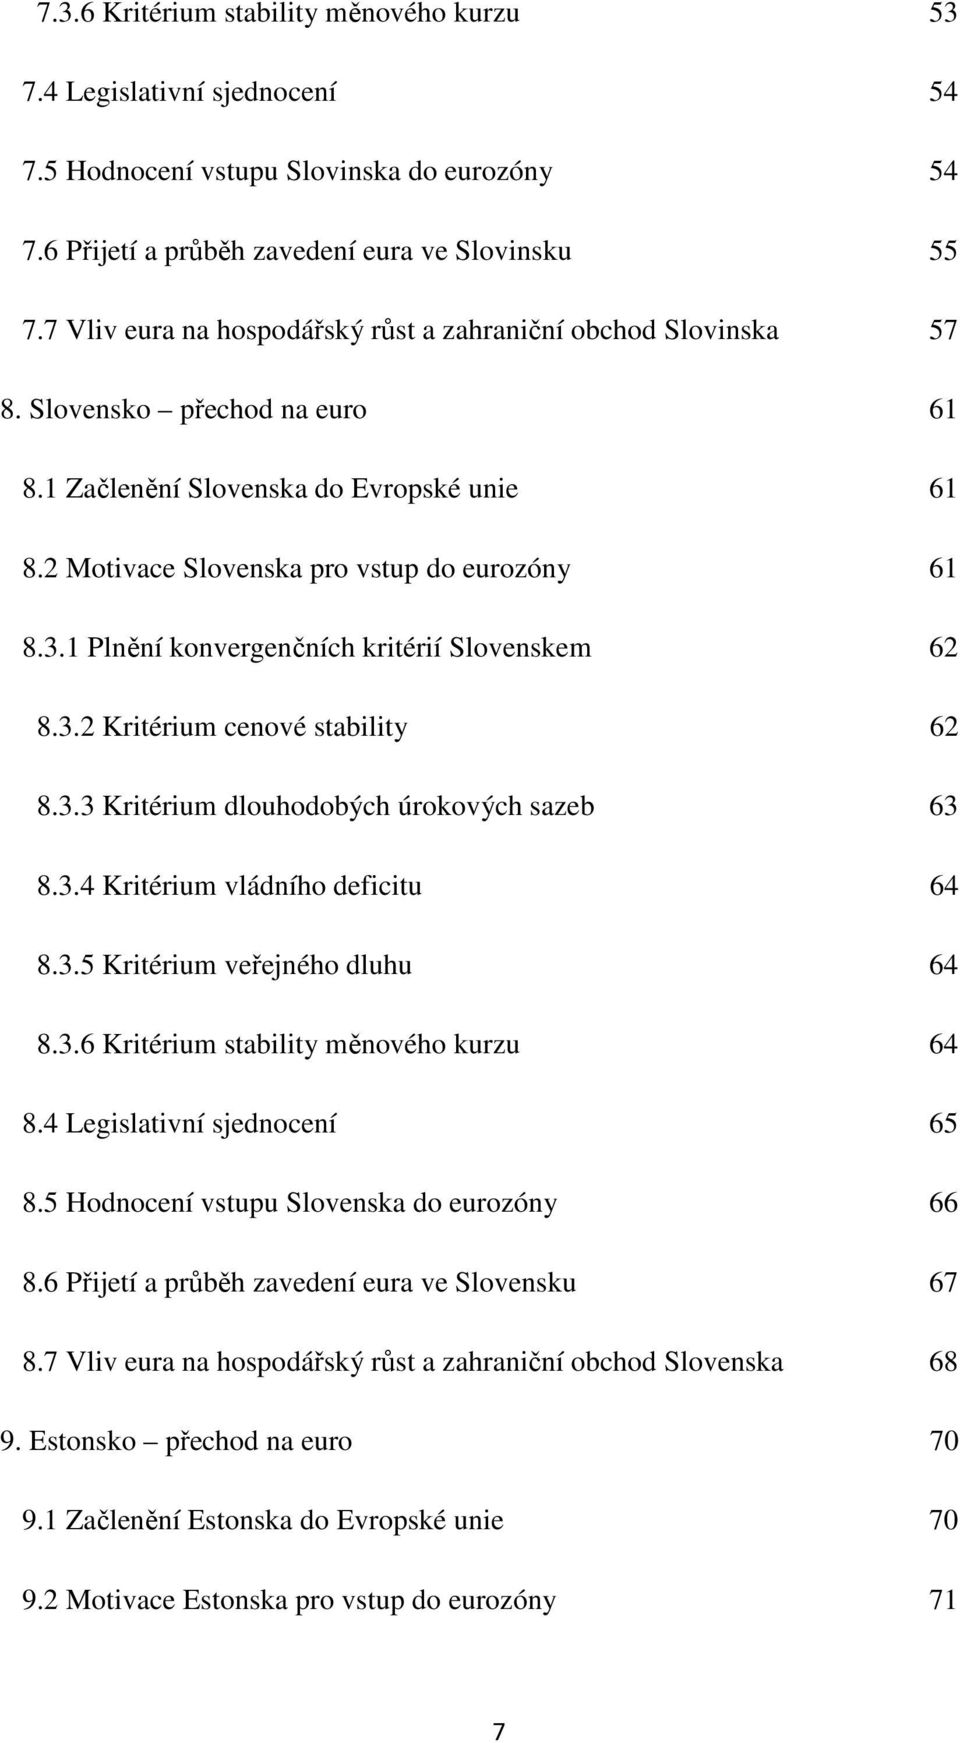 1 Plnění konvergenčních kritérií Slovenskem 62 8.3.2 Kritérium cenové stability 62 8.3.3 Kritérium dlouhodobých úrokových sazeb 63 8.3.4 Kritérium vládního deficitu 64 8.3.5 Kritérium veřejného dluhu 64 8.